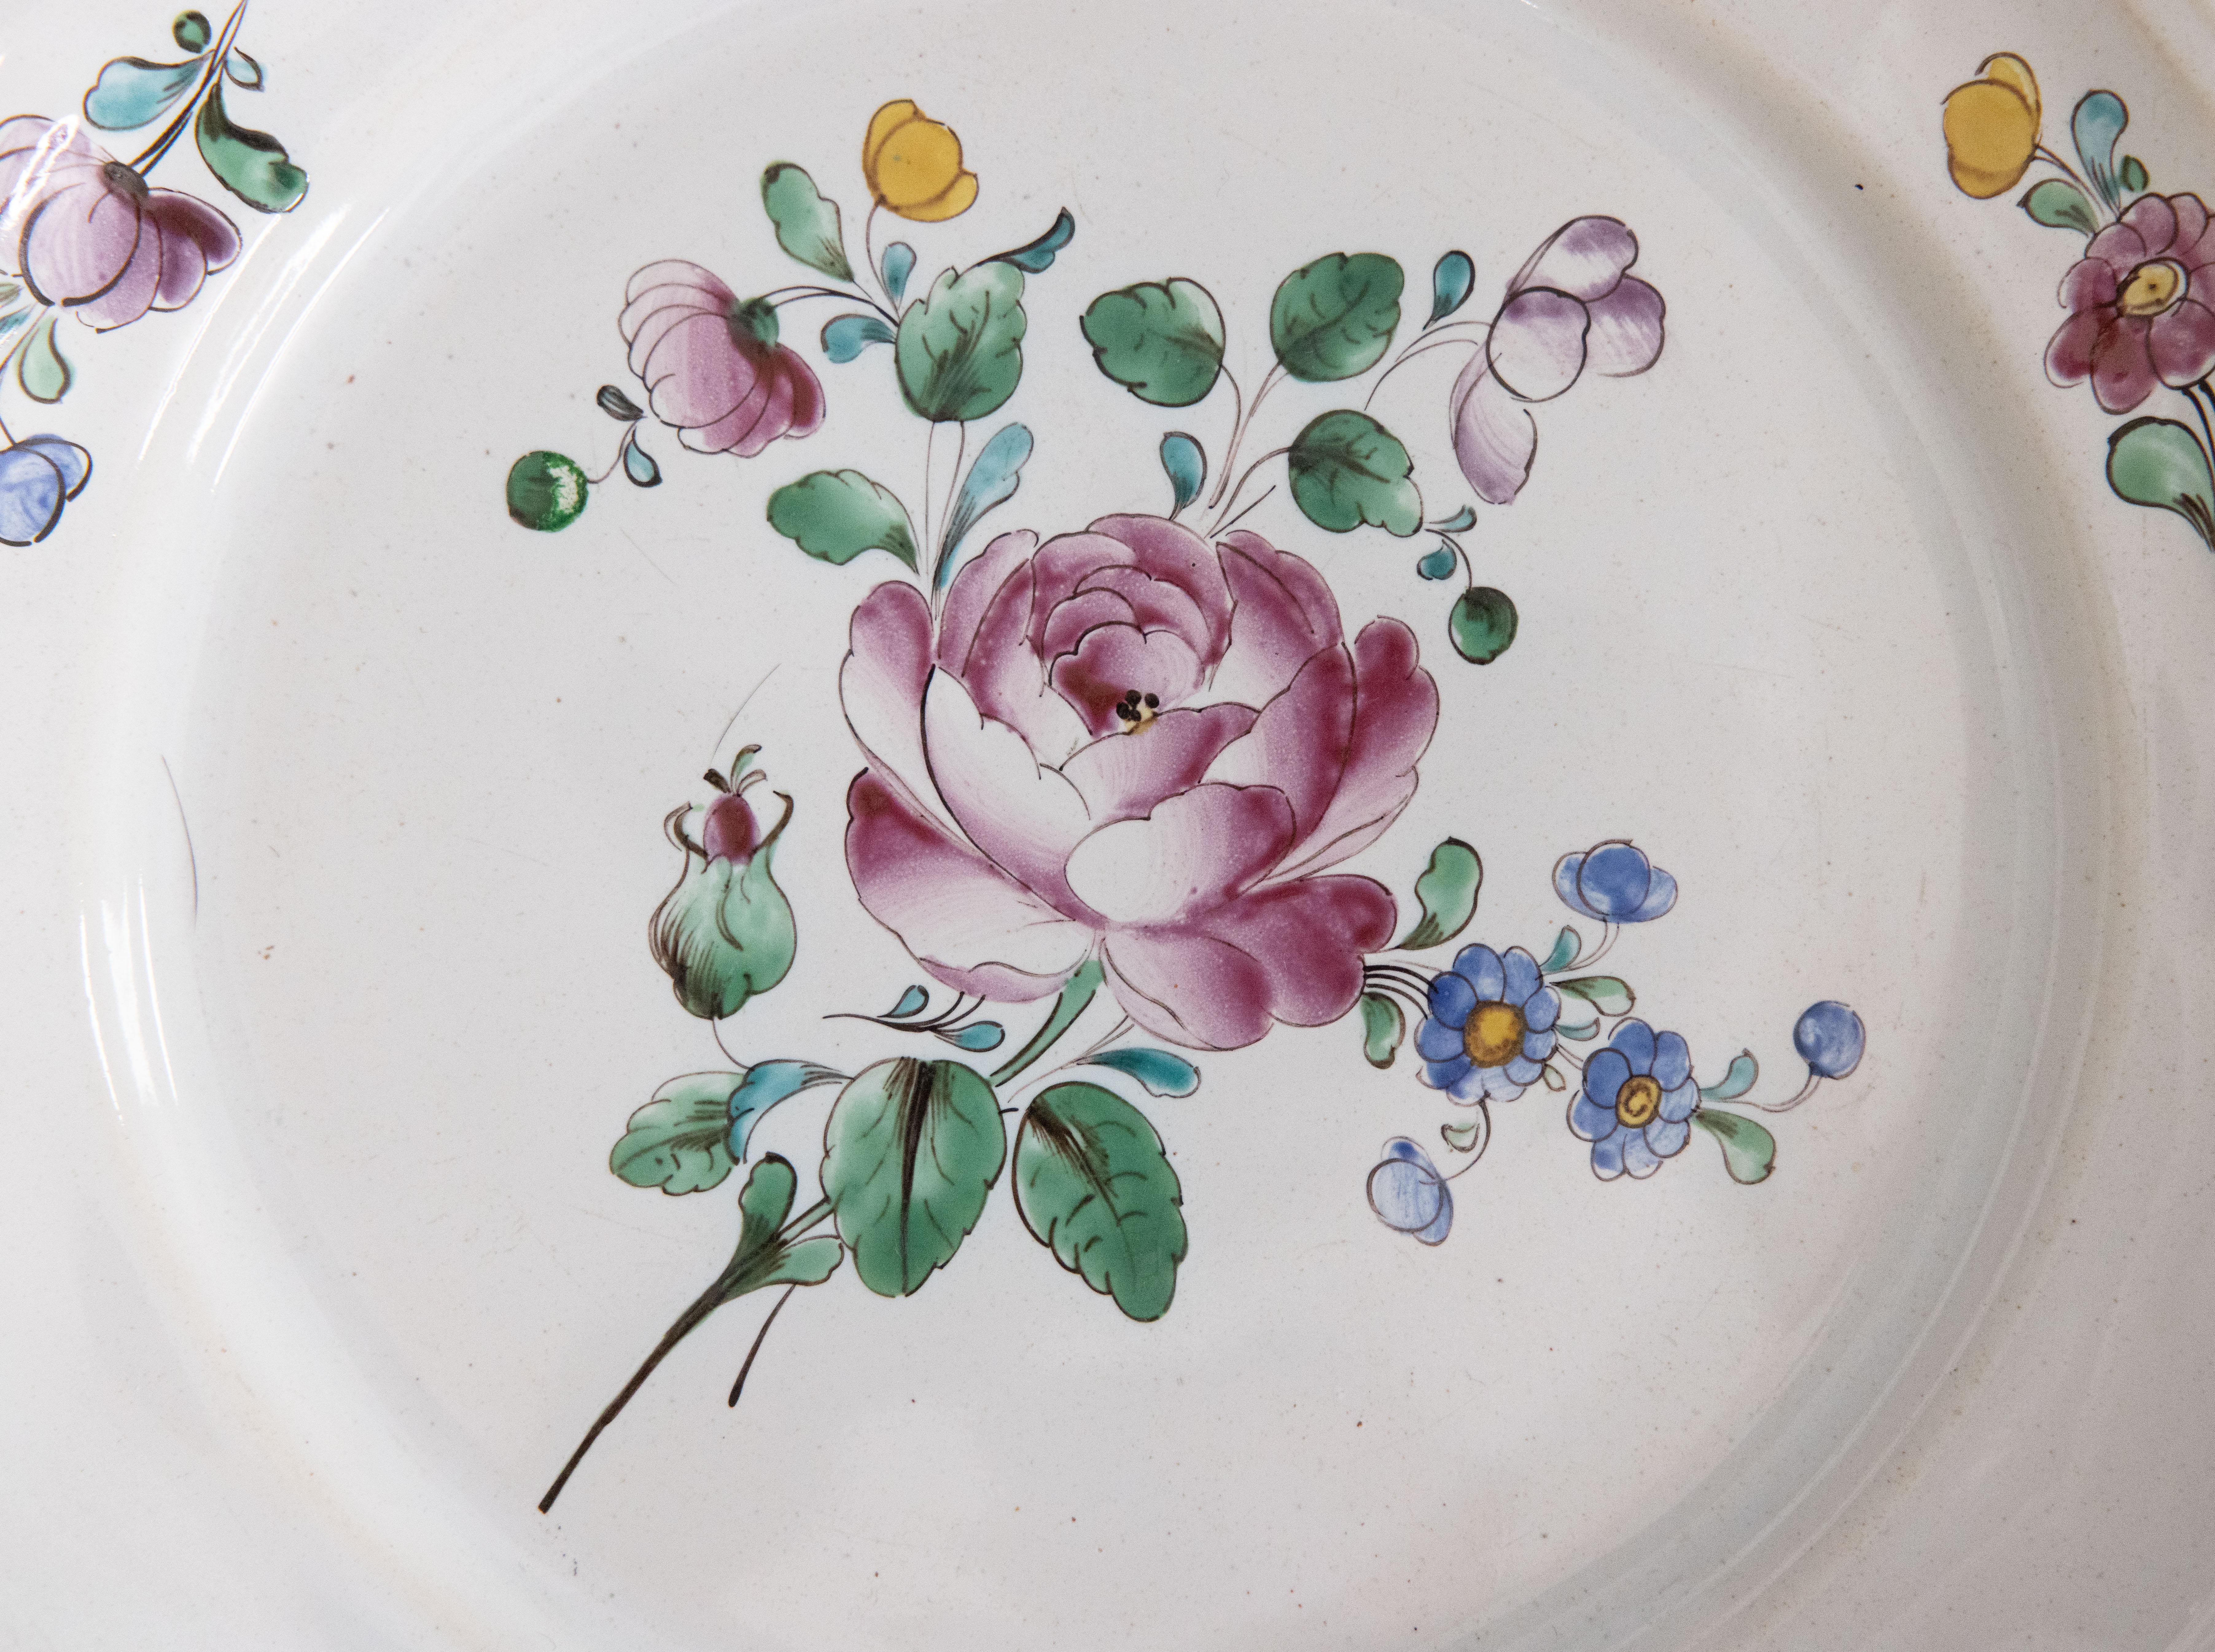 Une belle assiette ancienne en faïence française de la fin du 18e siècle au début du 19e siècle avec de belles fleurs peintes à la main et un bord festonné. Il serait fabuleux exposé sur un mur ou une étagère dans n'importe quelle